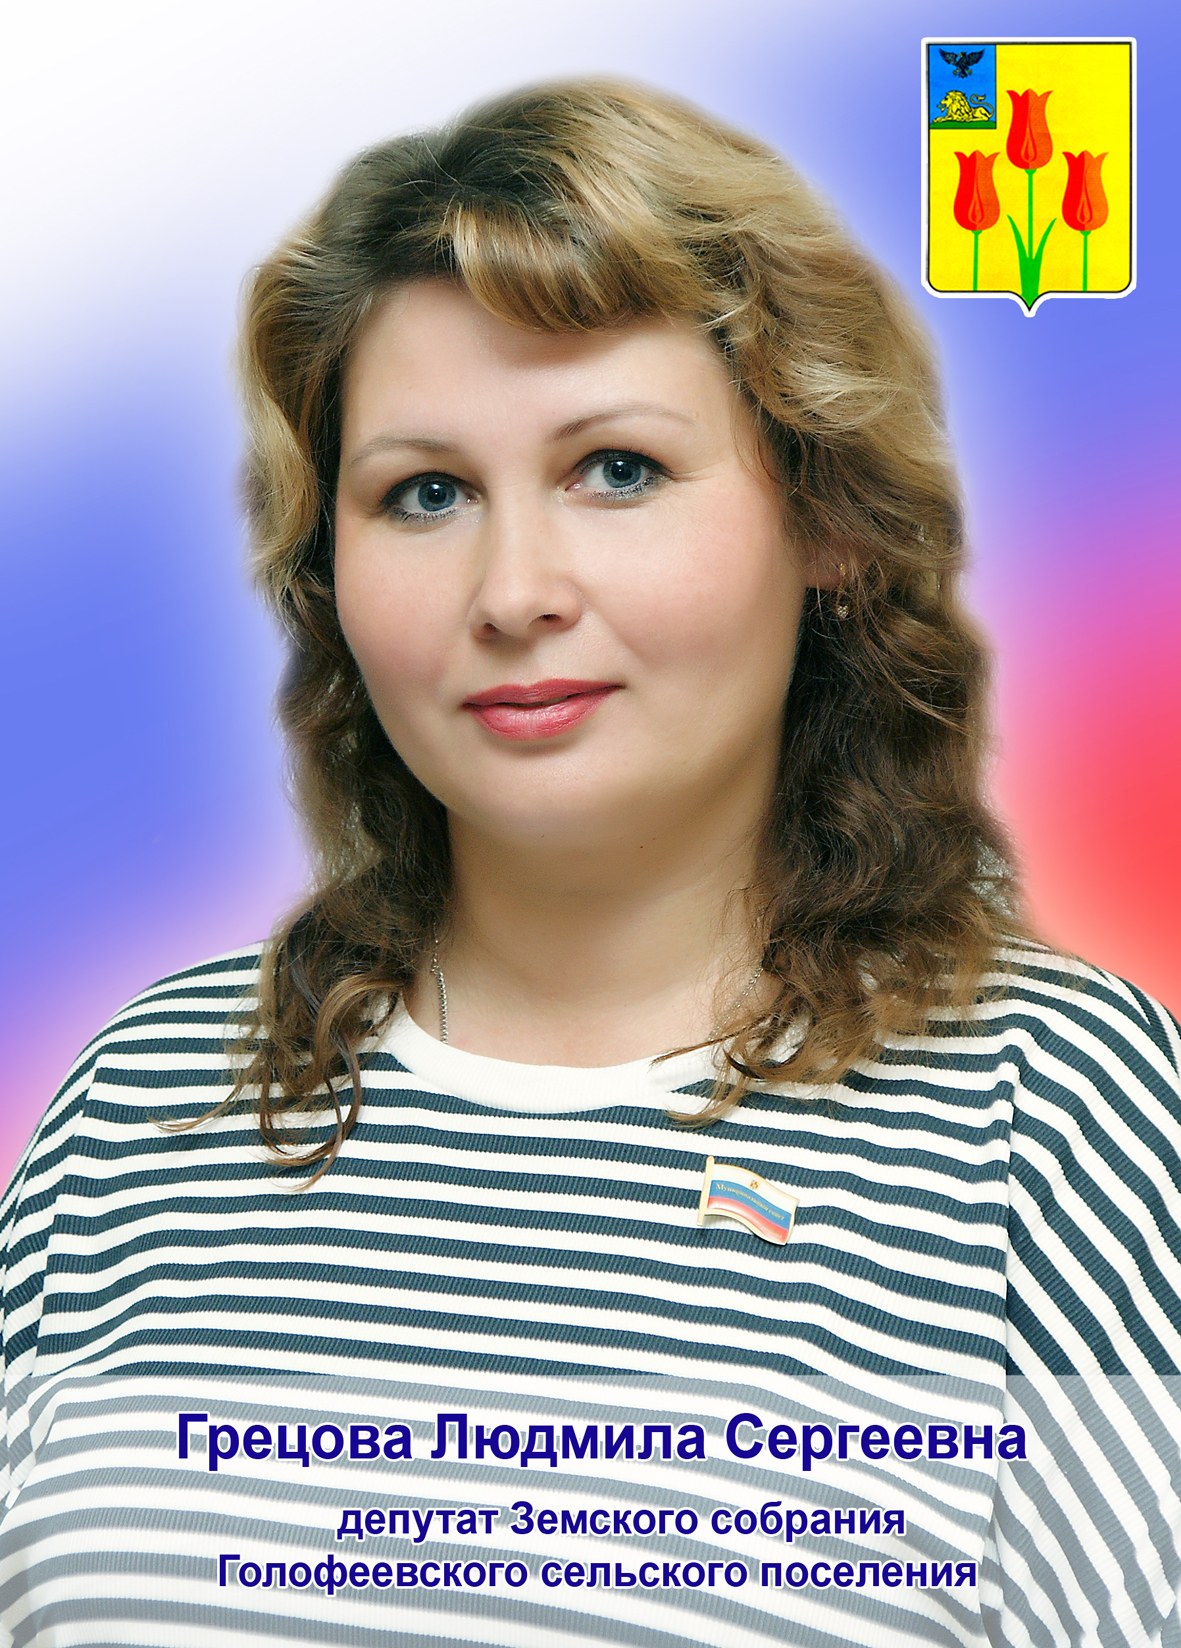 Грецова Людмила Сергеевна.